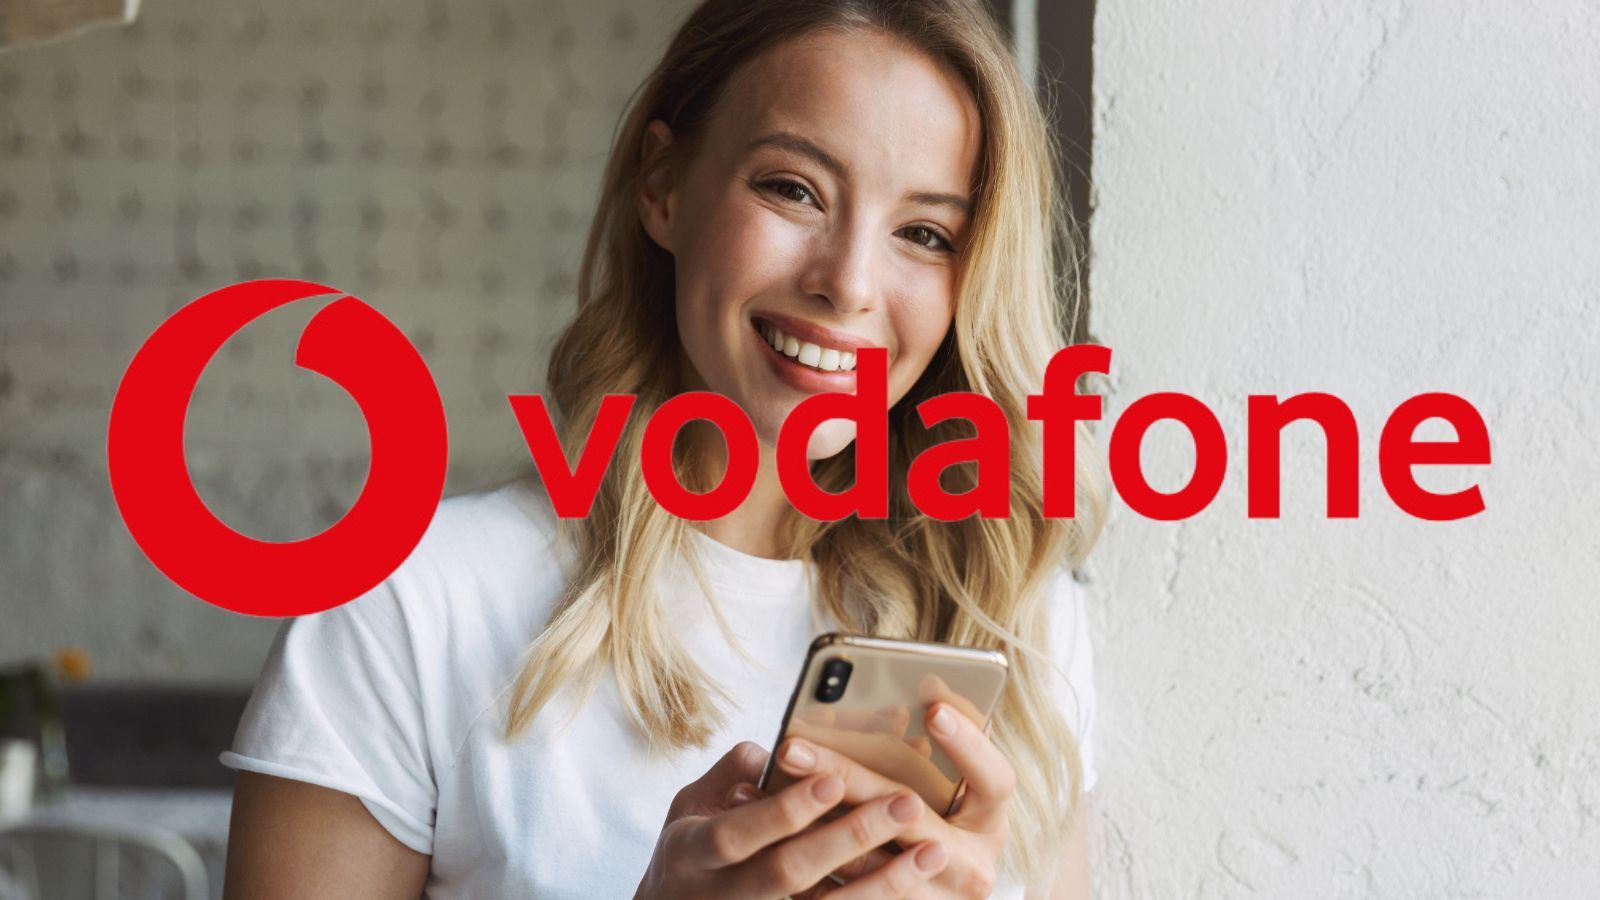 Vodafone SURCLASSA Iliad con 5G e offerte shock 150 giga al mese